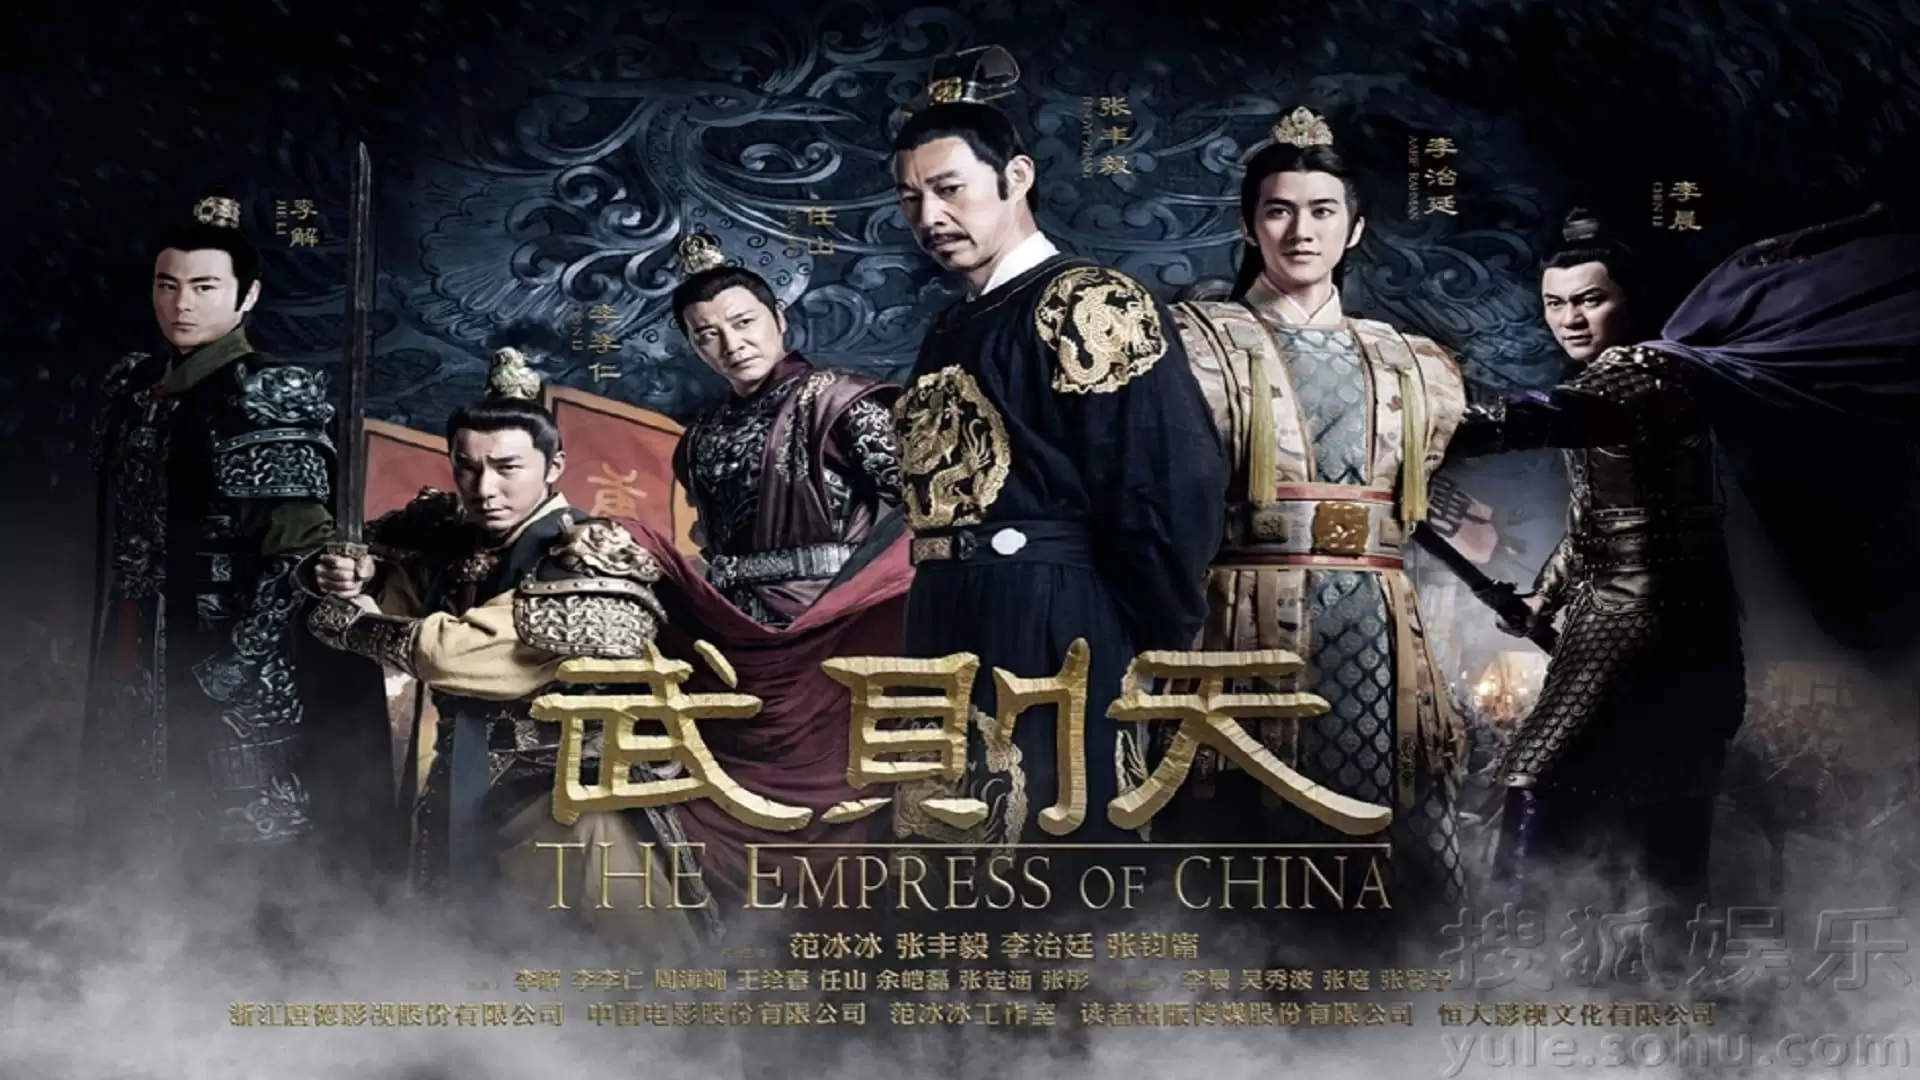 دانلود سریال The Empress of China 2014 با زیرنویس فارسی